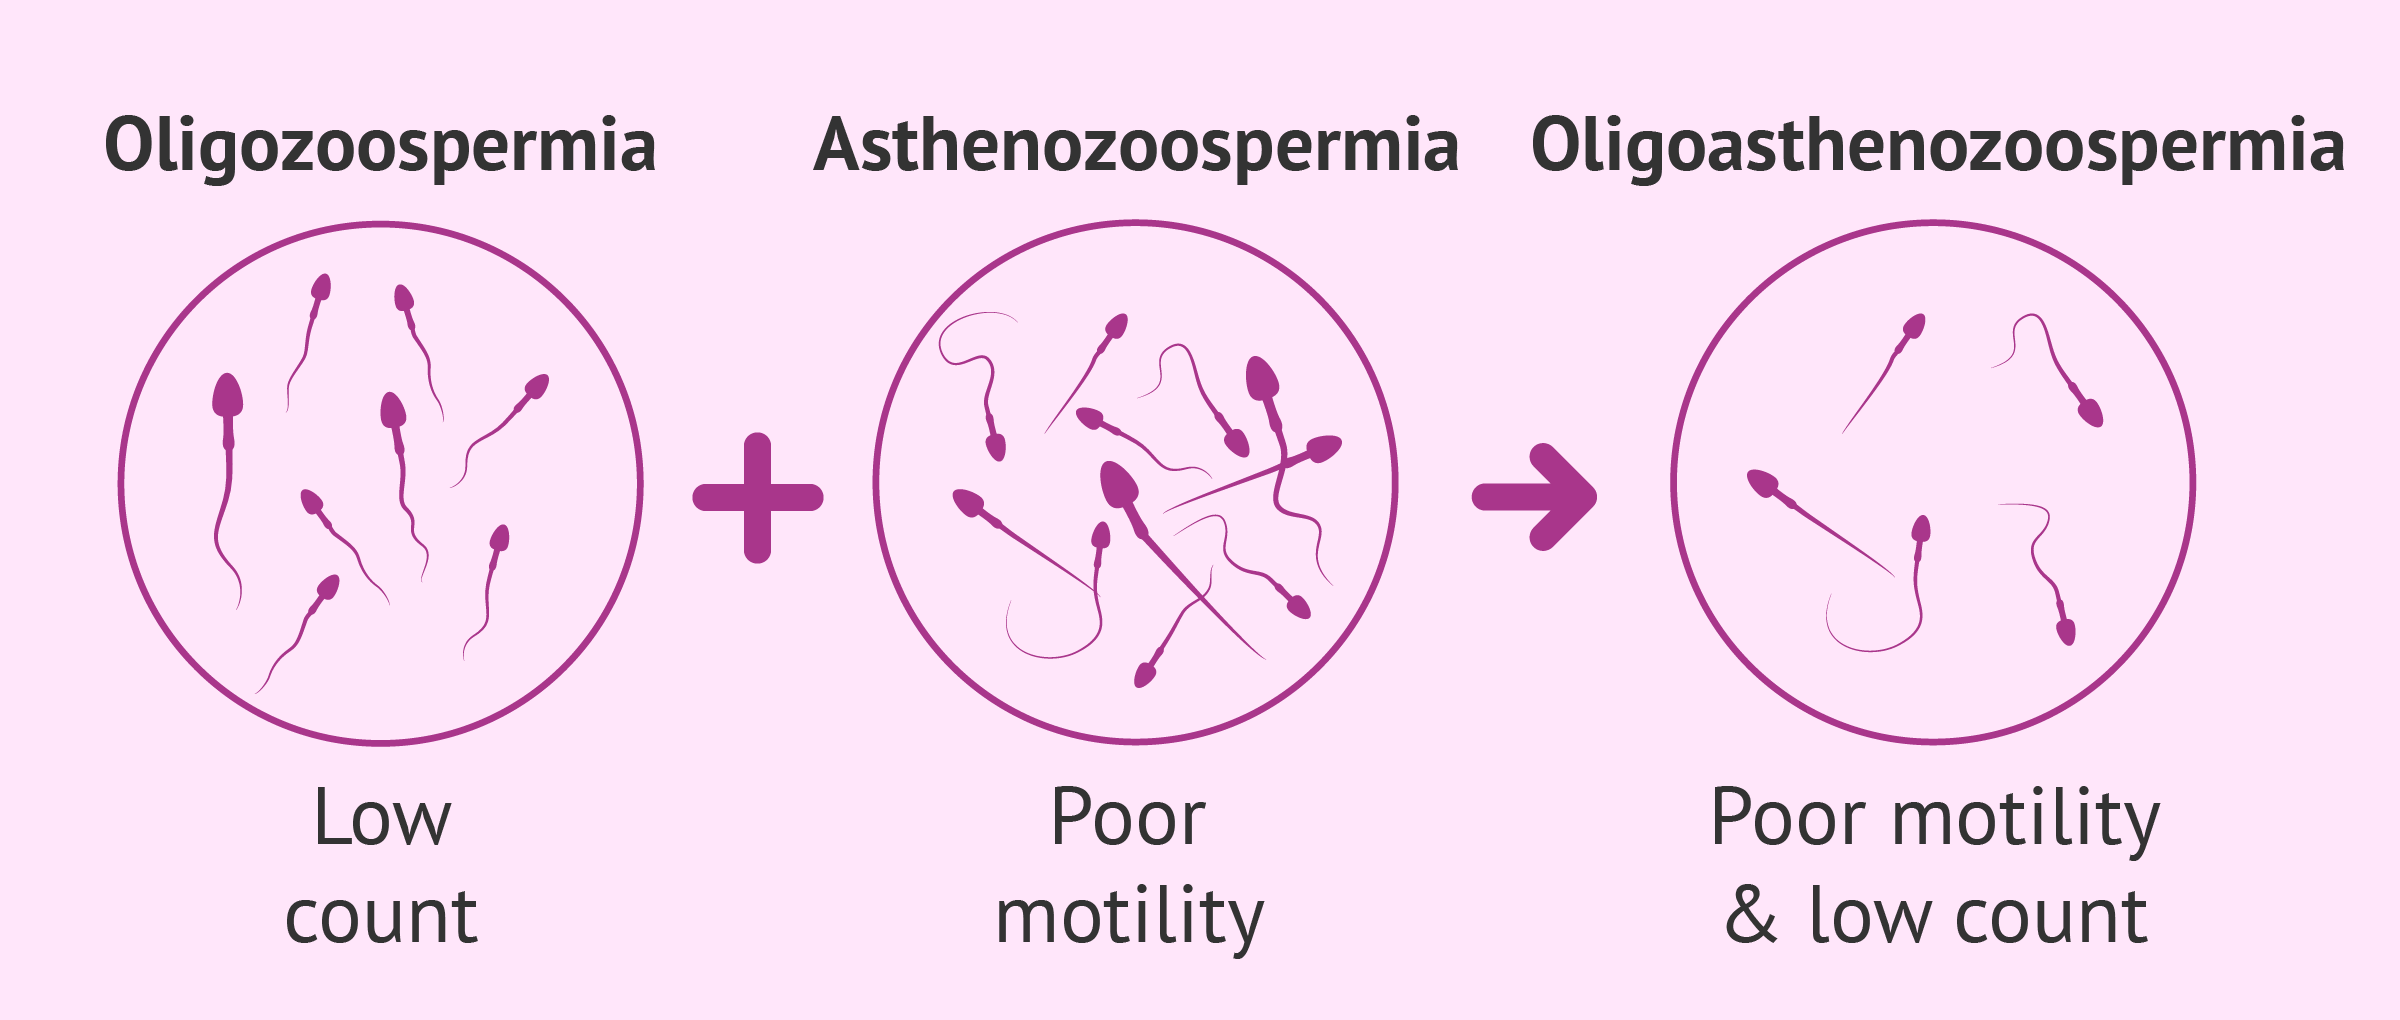 oligoasthenozoospermia